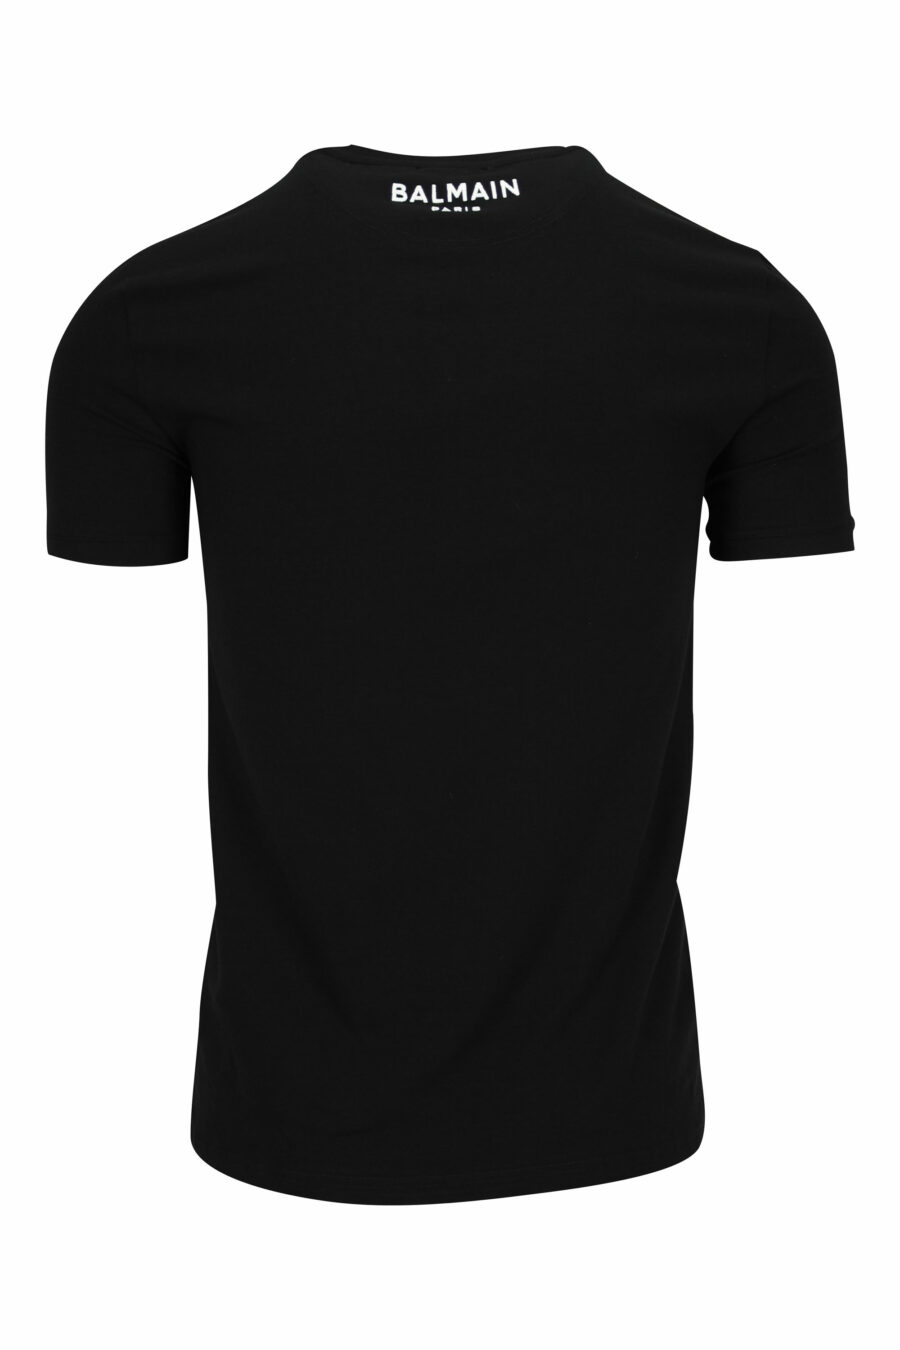 Schwarzes T-Shirt mit Mini-Logo am Kragen - 8032674524621 1